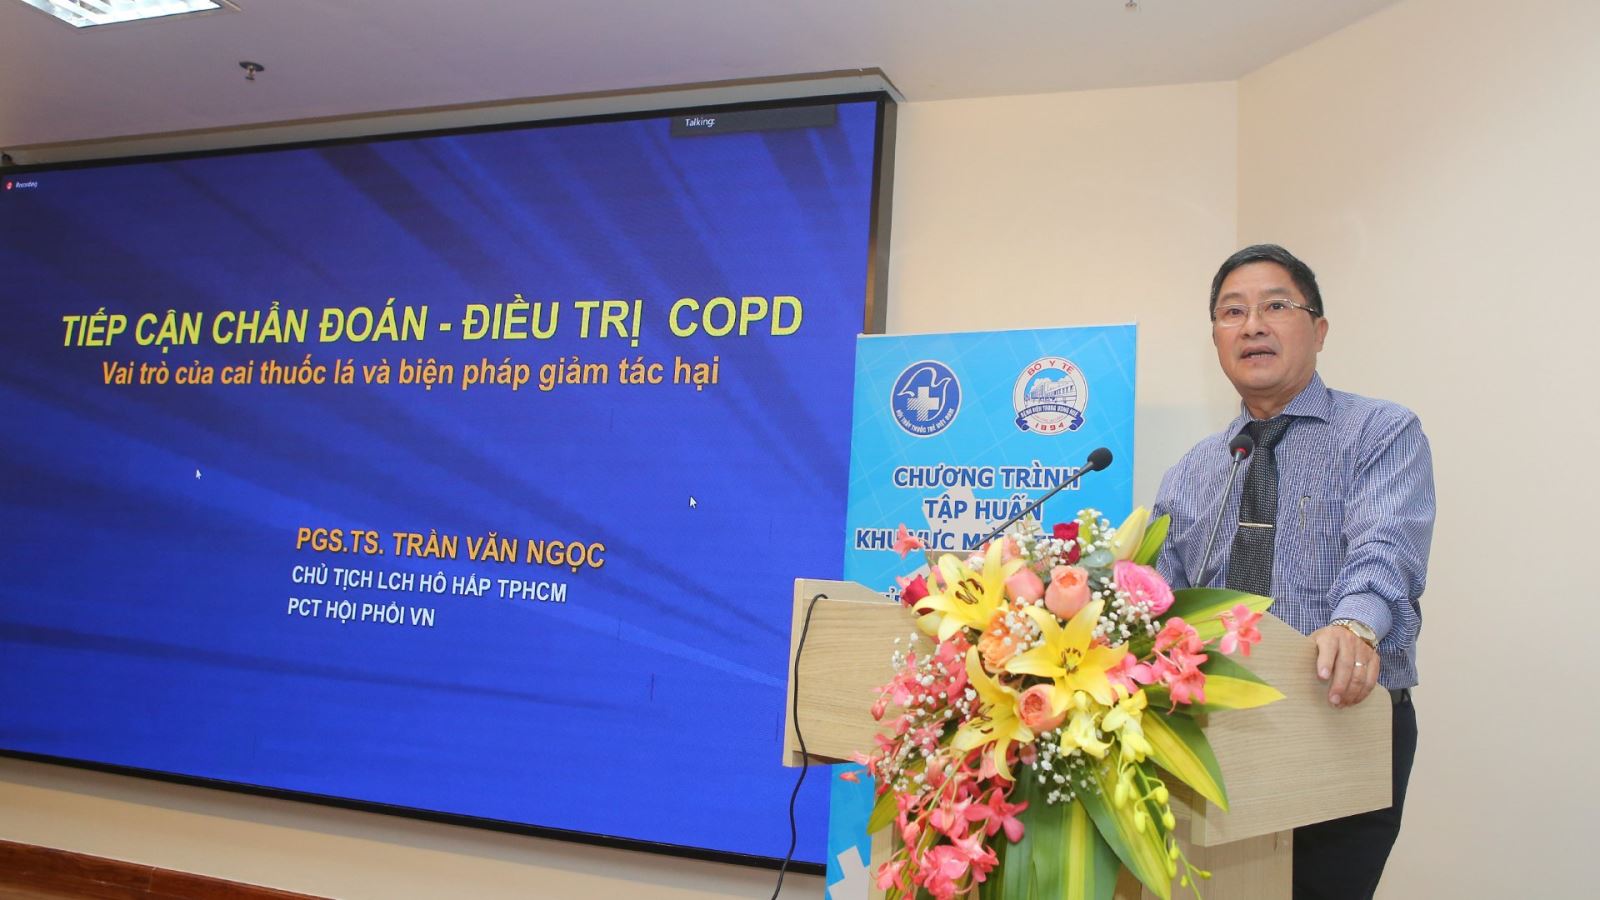 PGS.TS Trần Văn Ngọc, Phó chủ tịch Hội Phổi Việt Nam phát biểu tại chương trình.